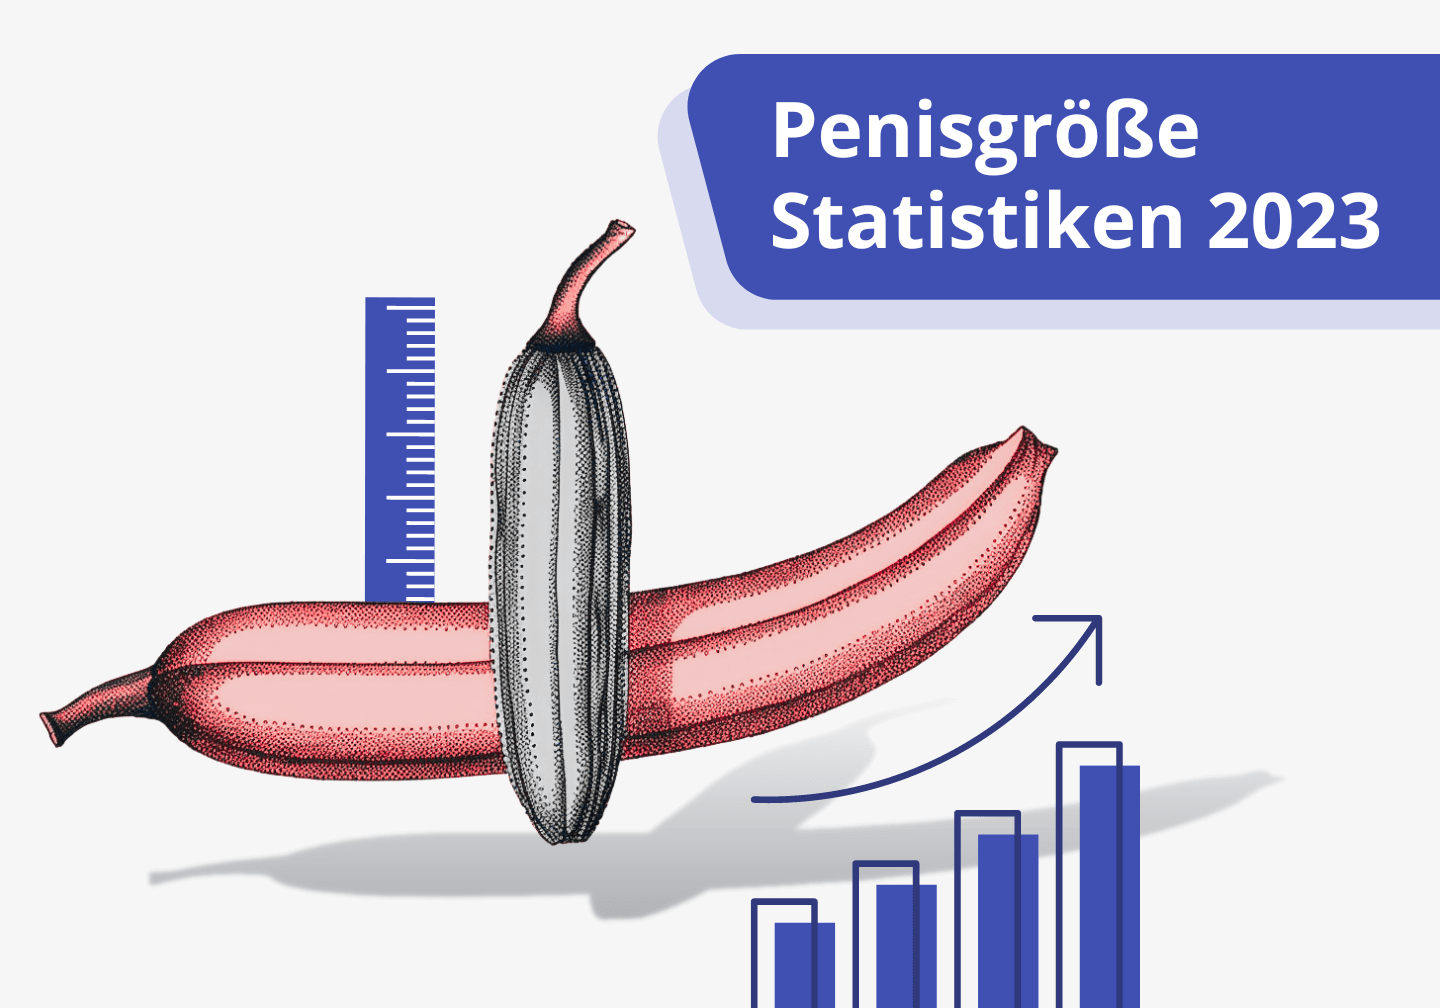 Penisgroesse durchschnitt Deutschland und weltweit - Illustration Fraulila Neu